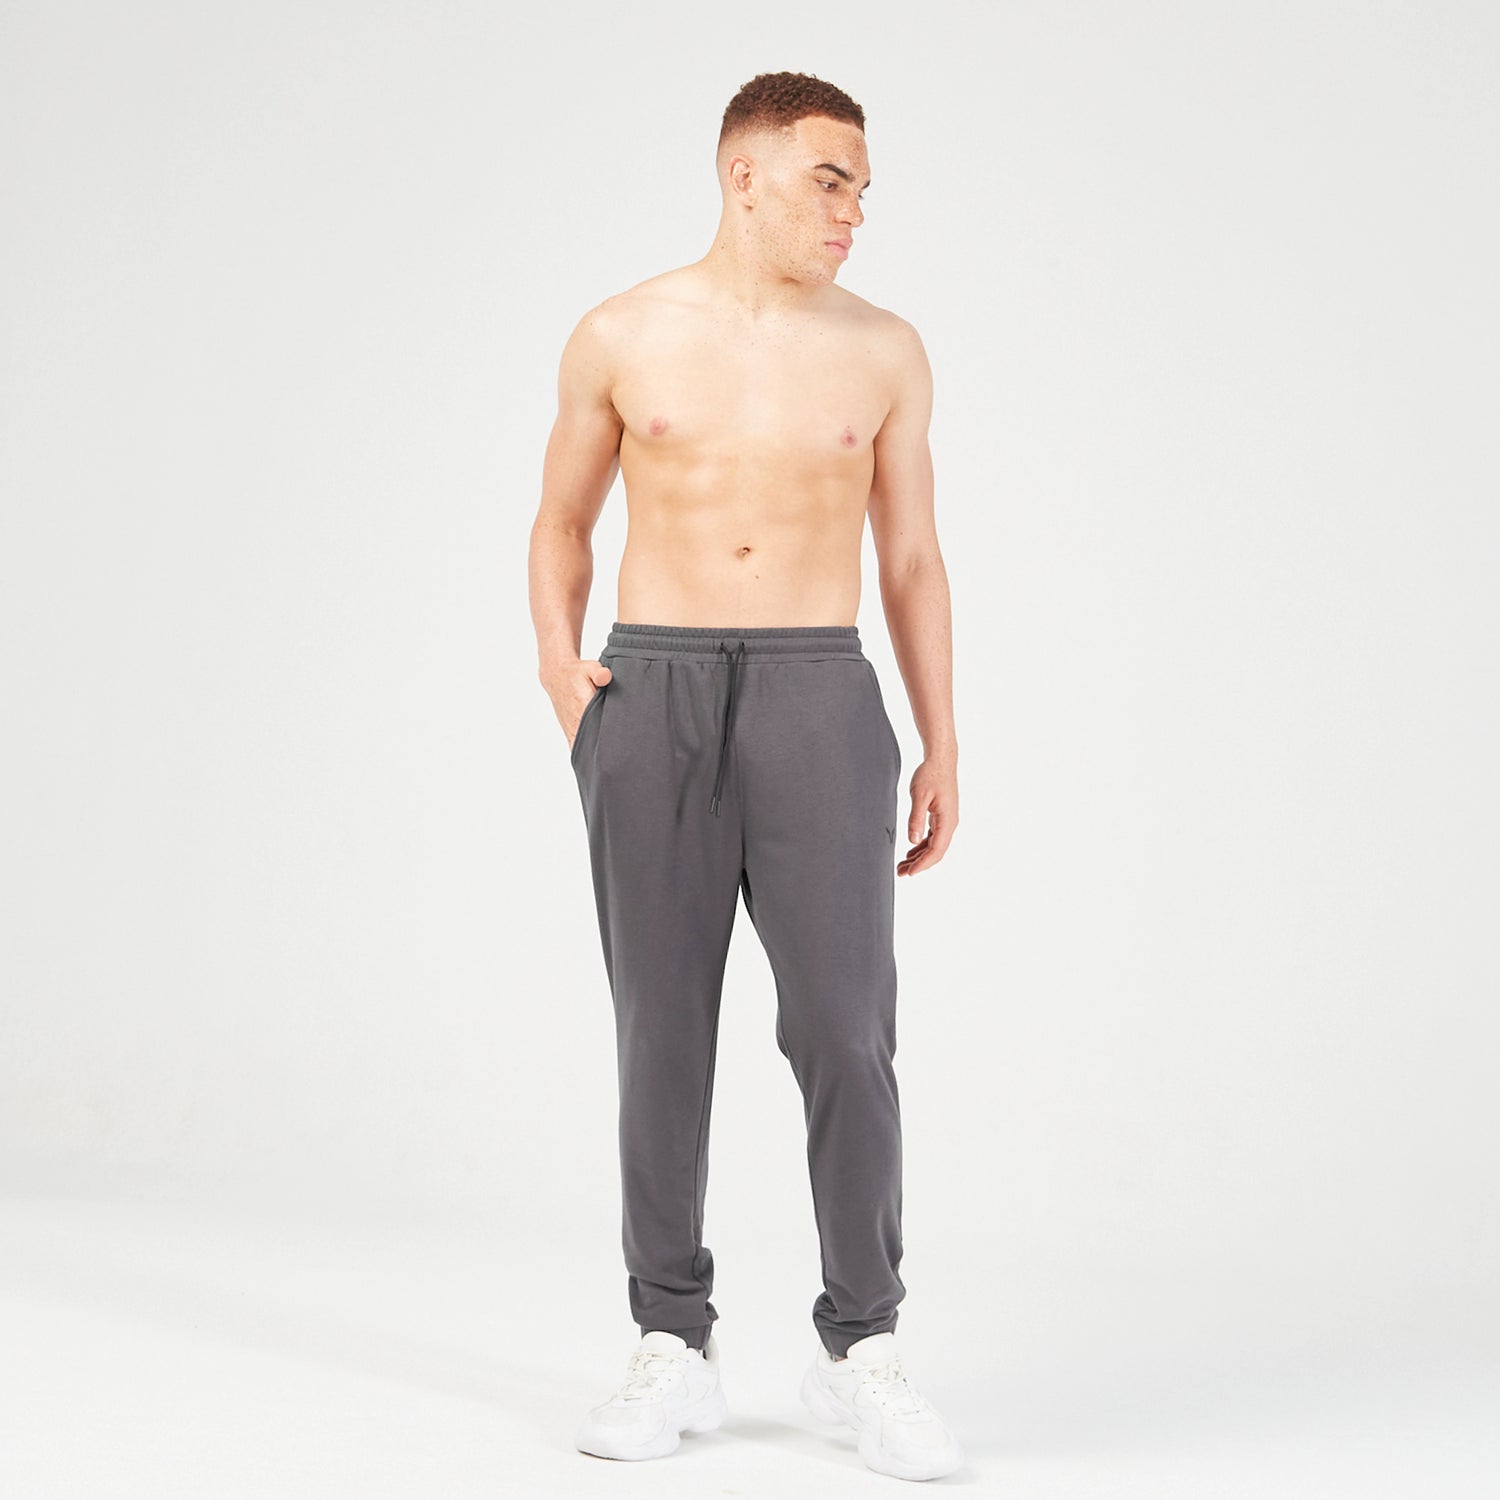 squatwolf-gym-wear-essential-jogger-pant-asphalt-workout-pants-for-men